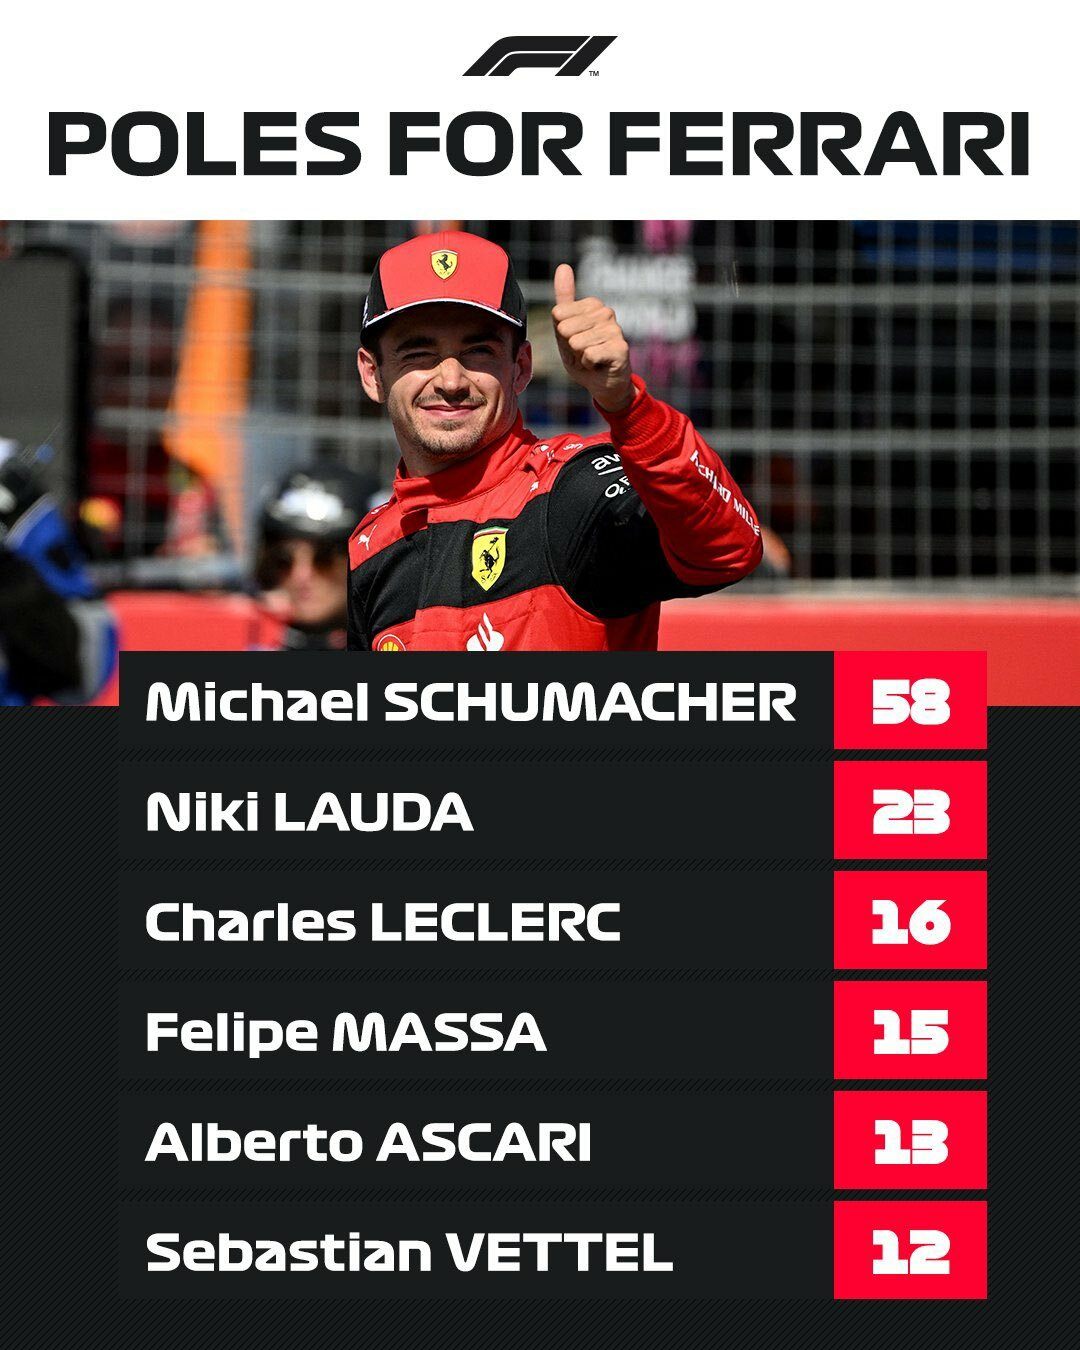 Статистика по поулам за Ferrari © Ferrari